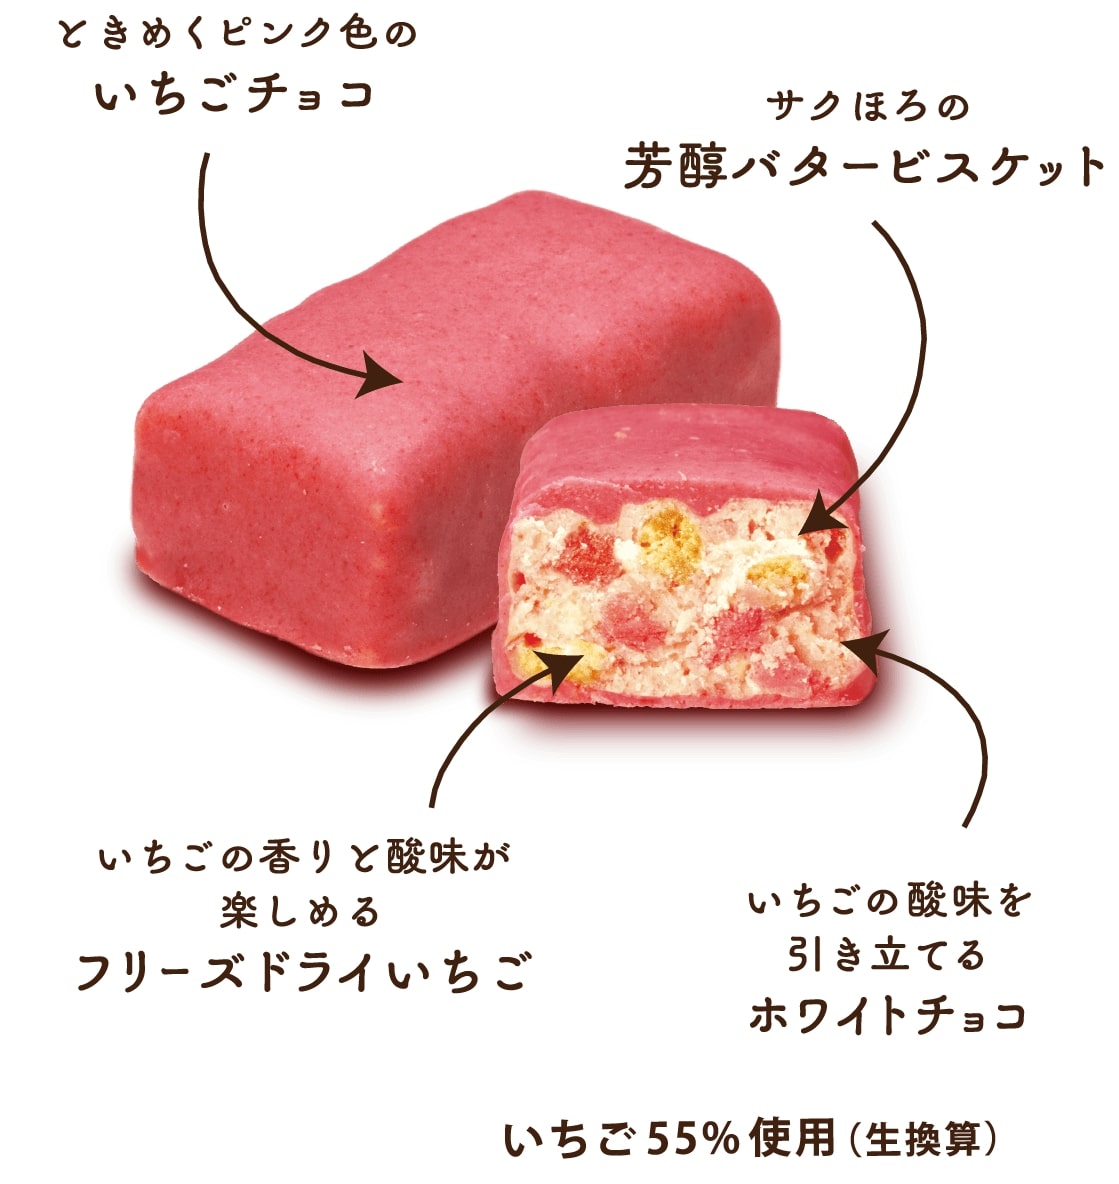 有楽製菓「ときめき苺サンダー」2 JPG